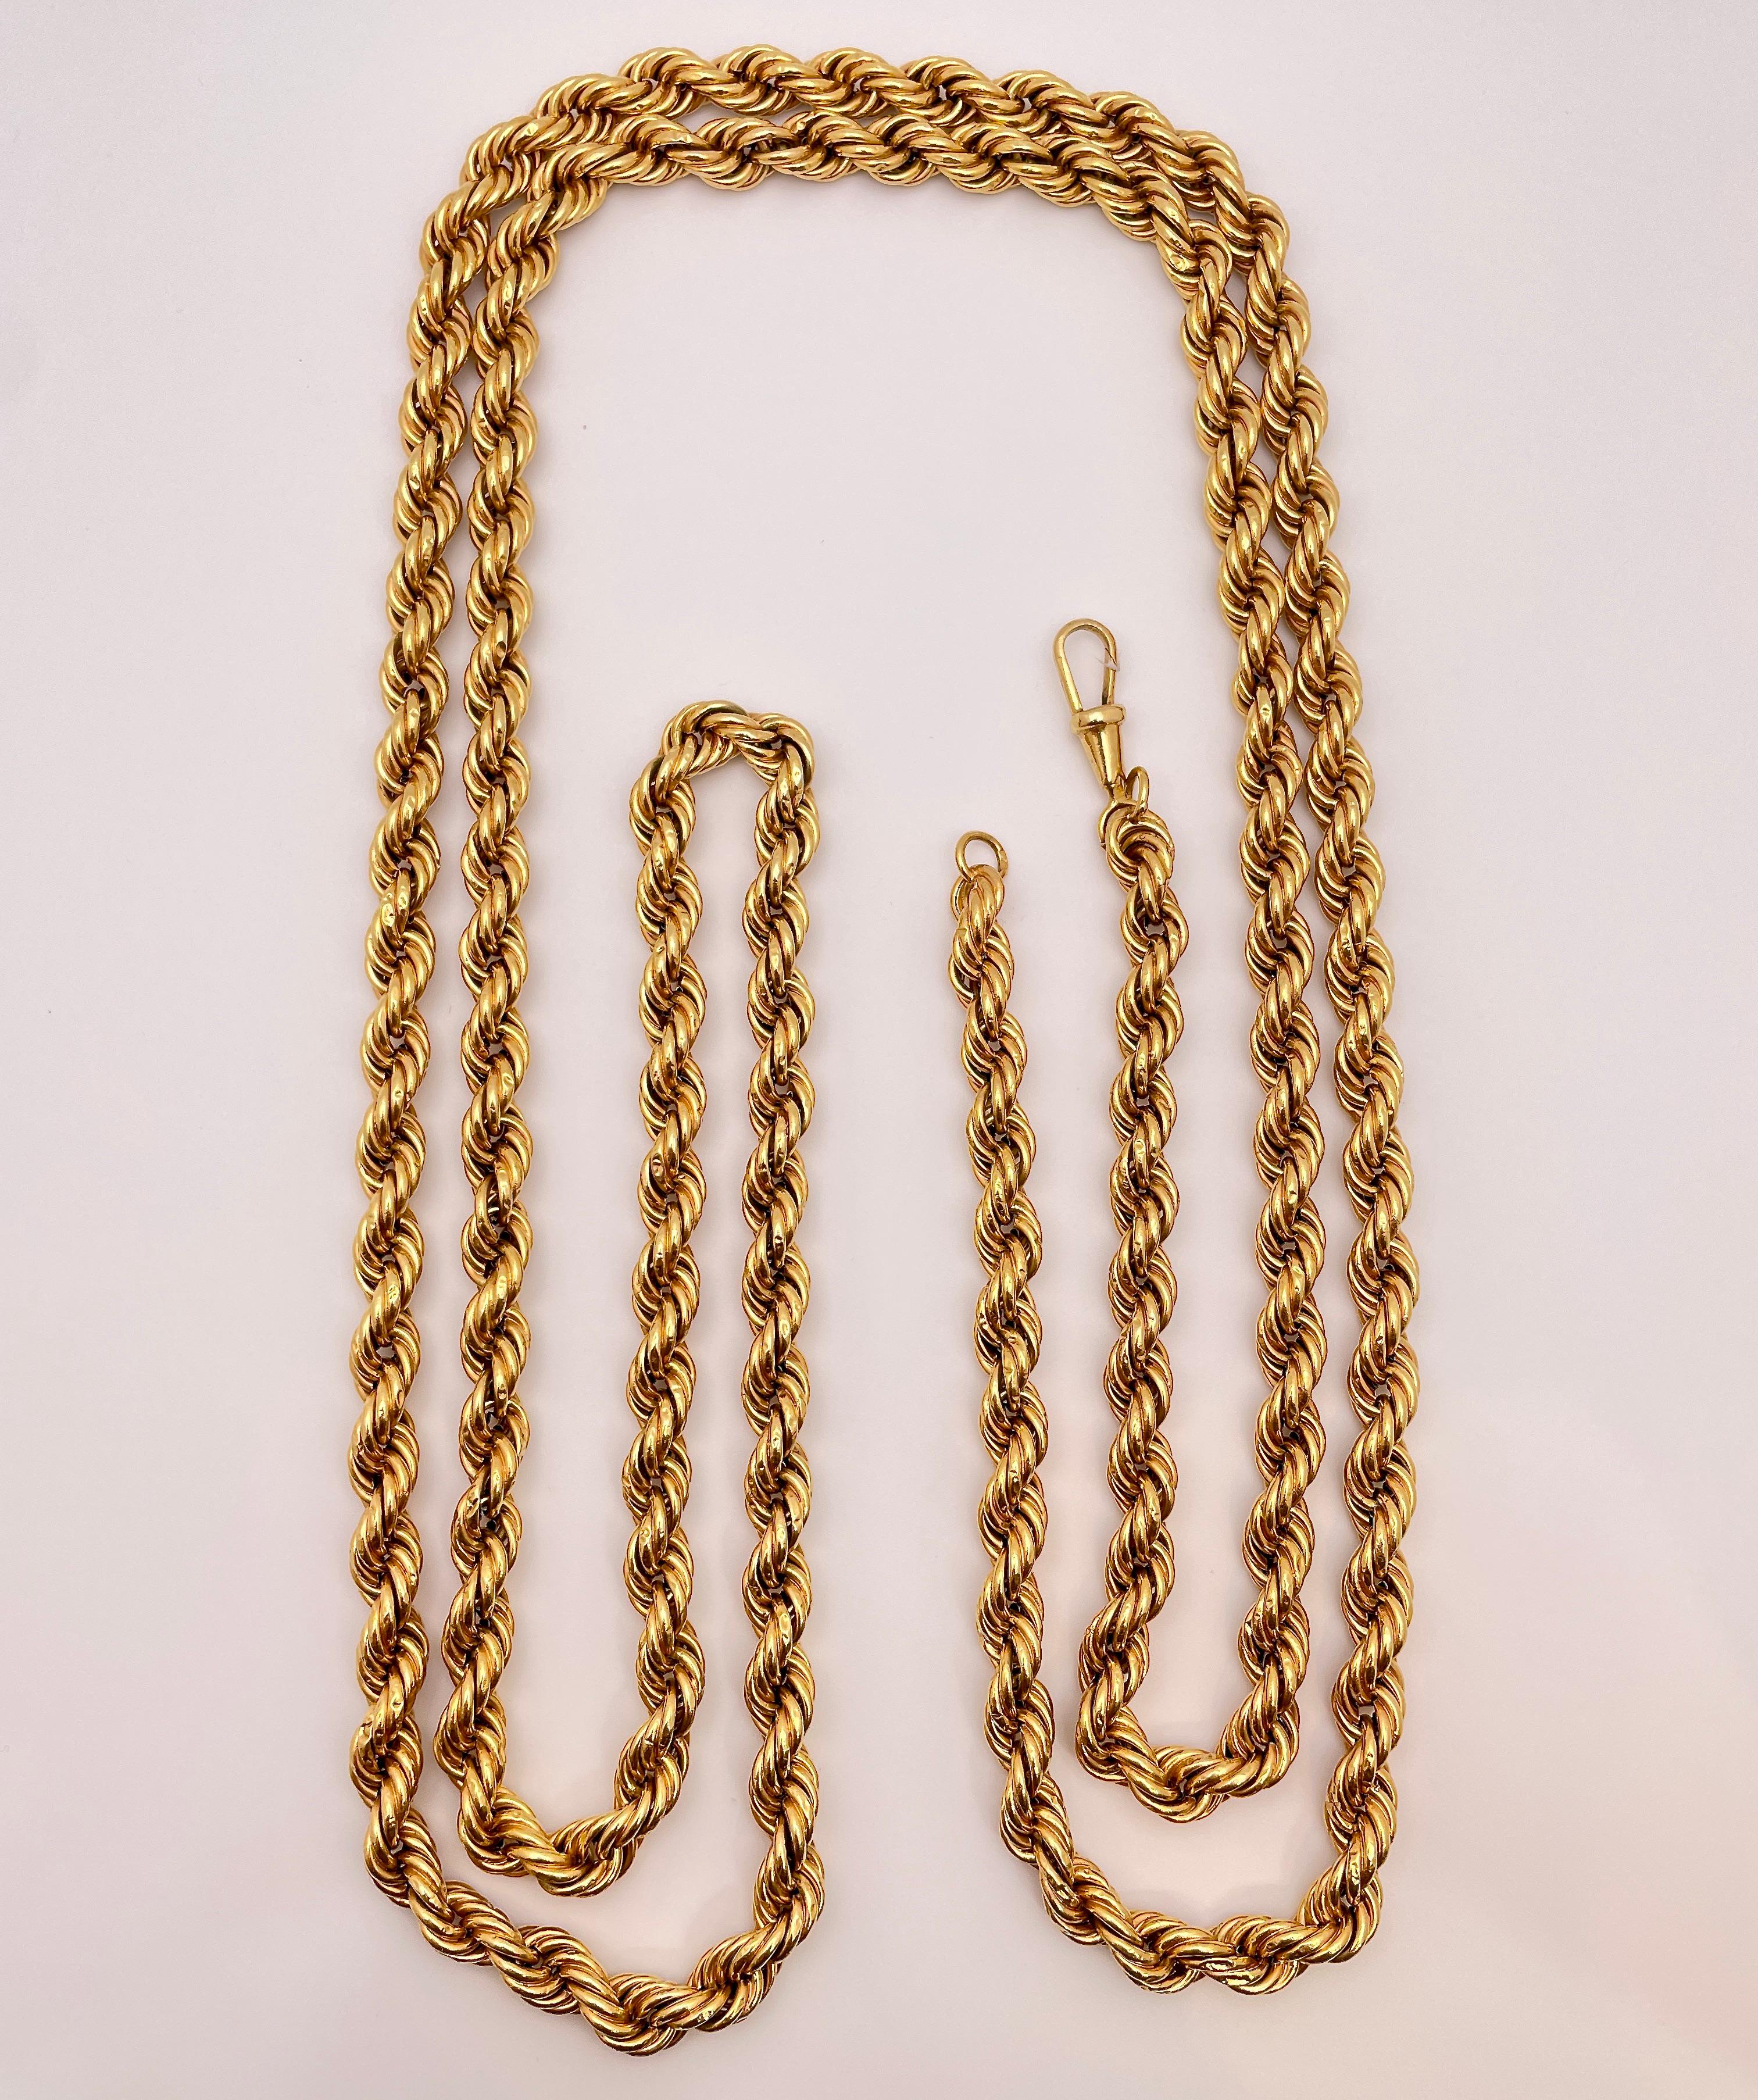 Eine originelle antike 18K Gelbgold dicken Seil Kette Halskette, circa 1950's. Diese prächtige Kette ist beeindruckende 58,75 cm lang, 7,50 mm breit, hat ein wunderschönes, flexibles, geflochtenes Design und ein Bruttogewicht von 61 Gramm. Außerdem